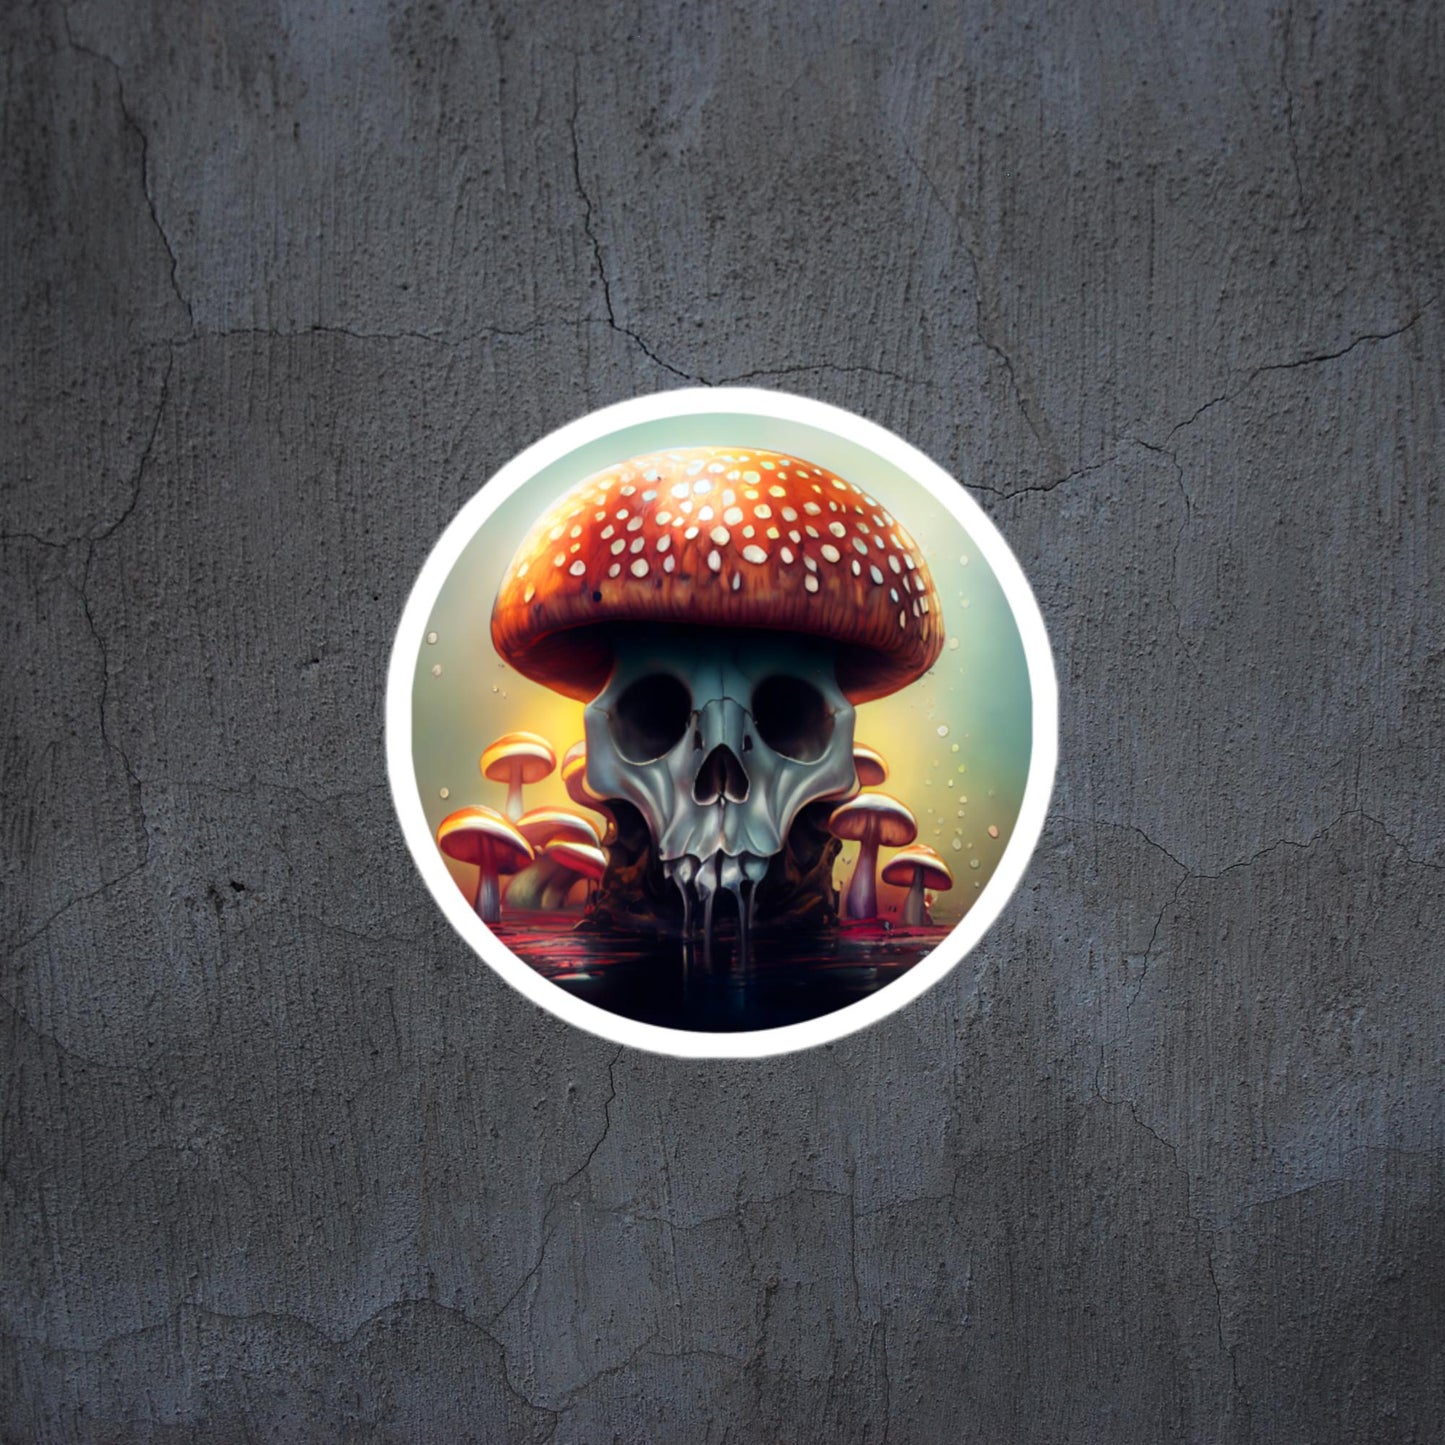 Mushroom top skull sticker/decal